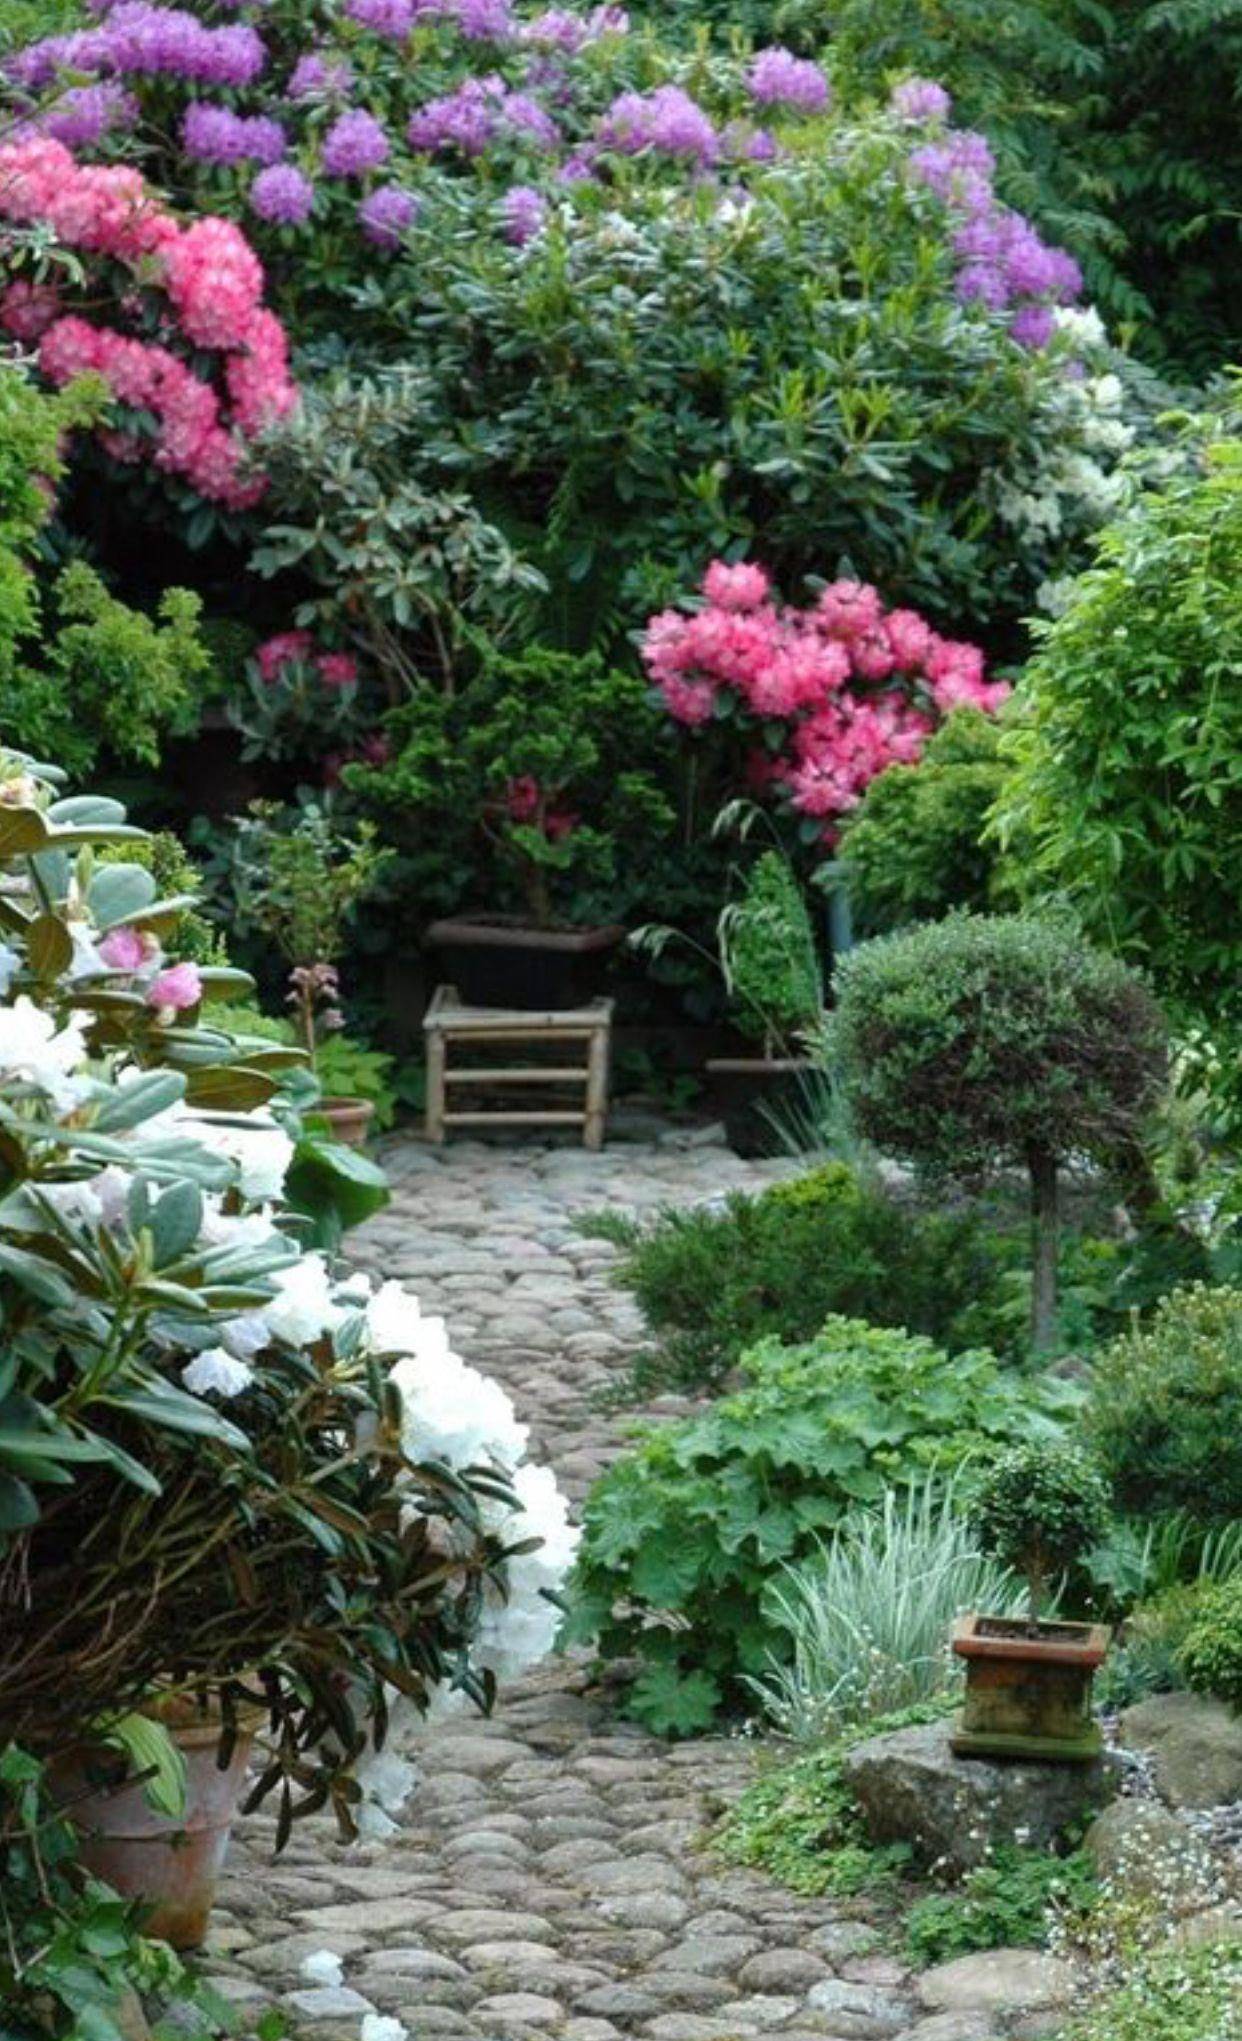 A Great Garden